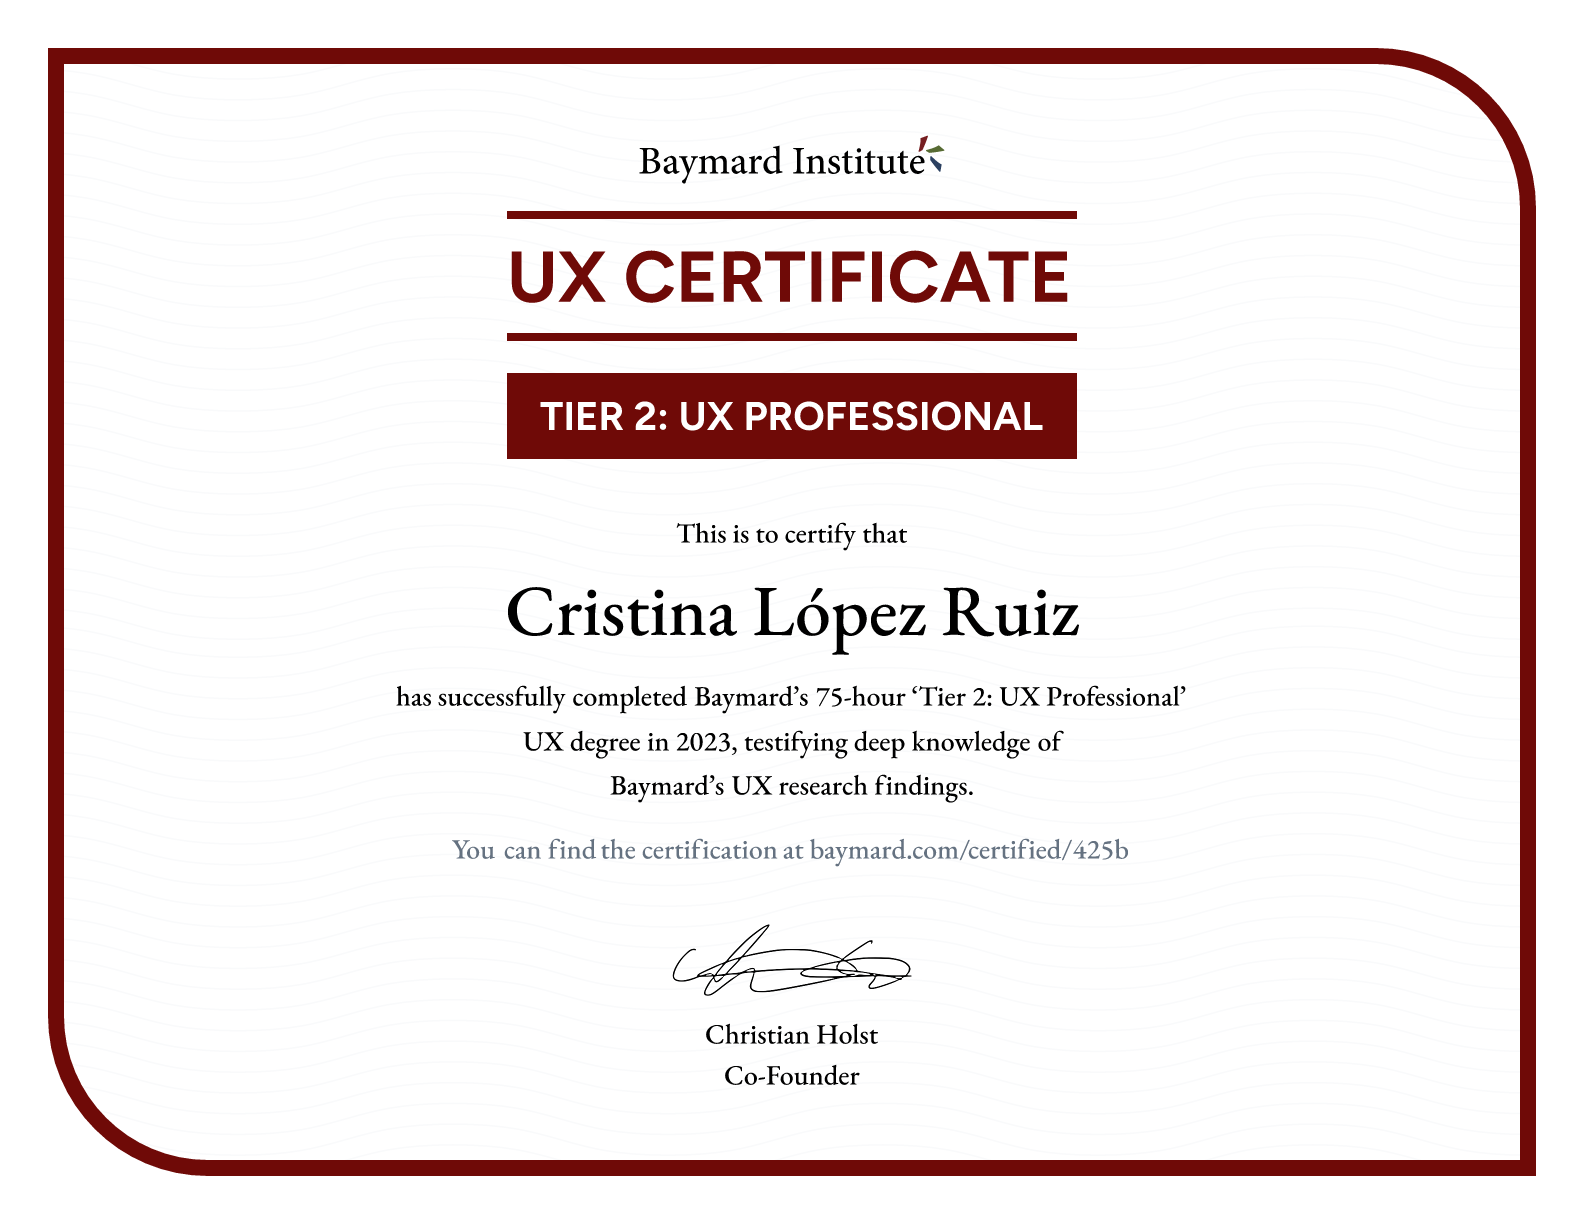 Cristina López Ruiz’s certificate